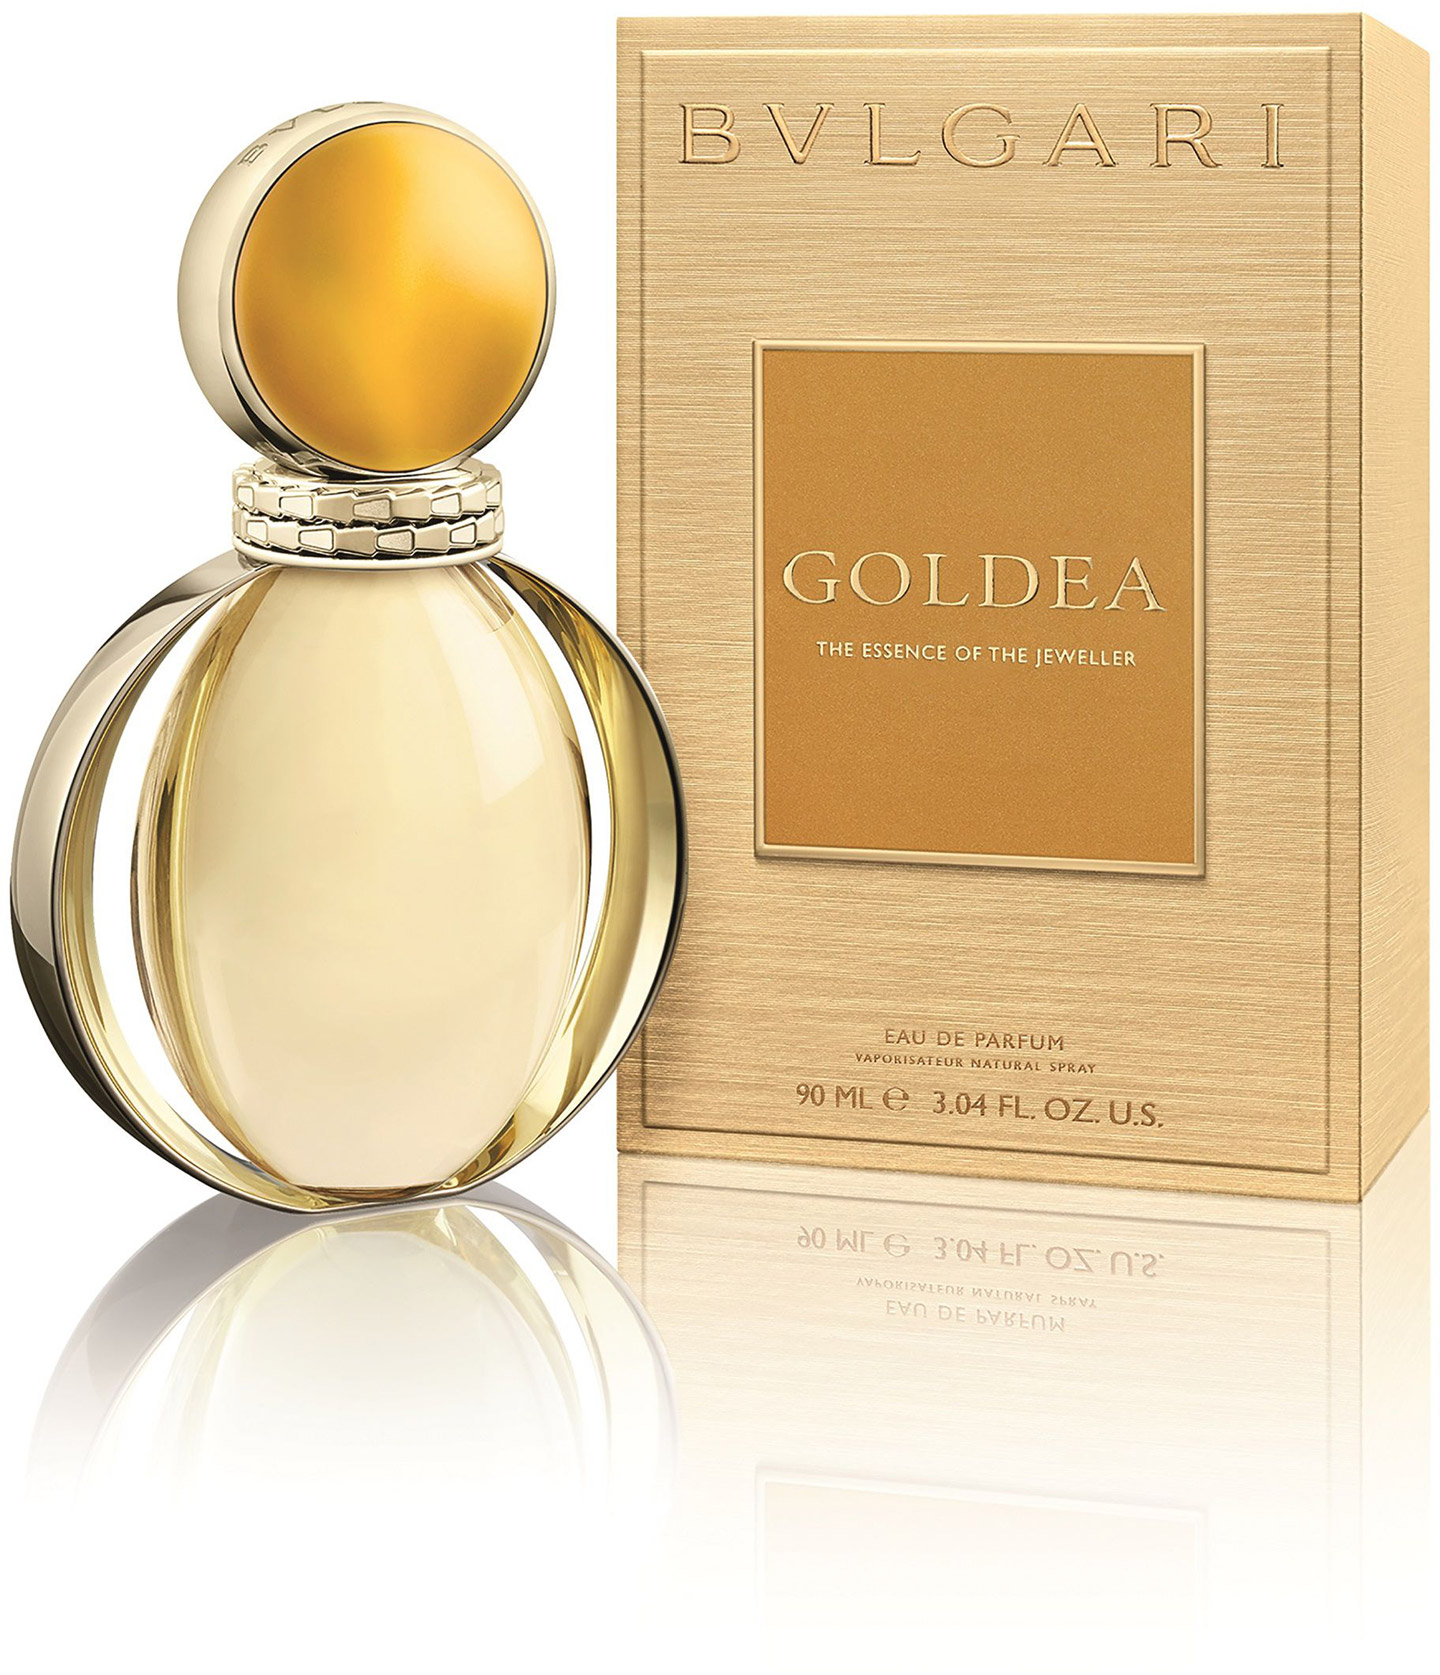 Bulgari Goldea eau de parfum